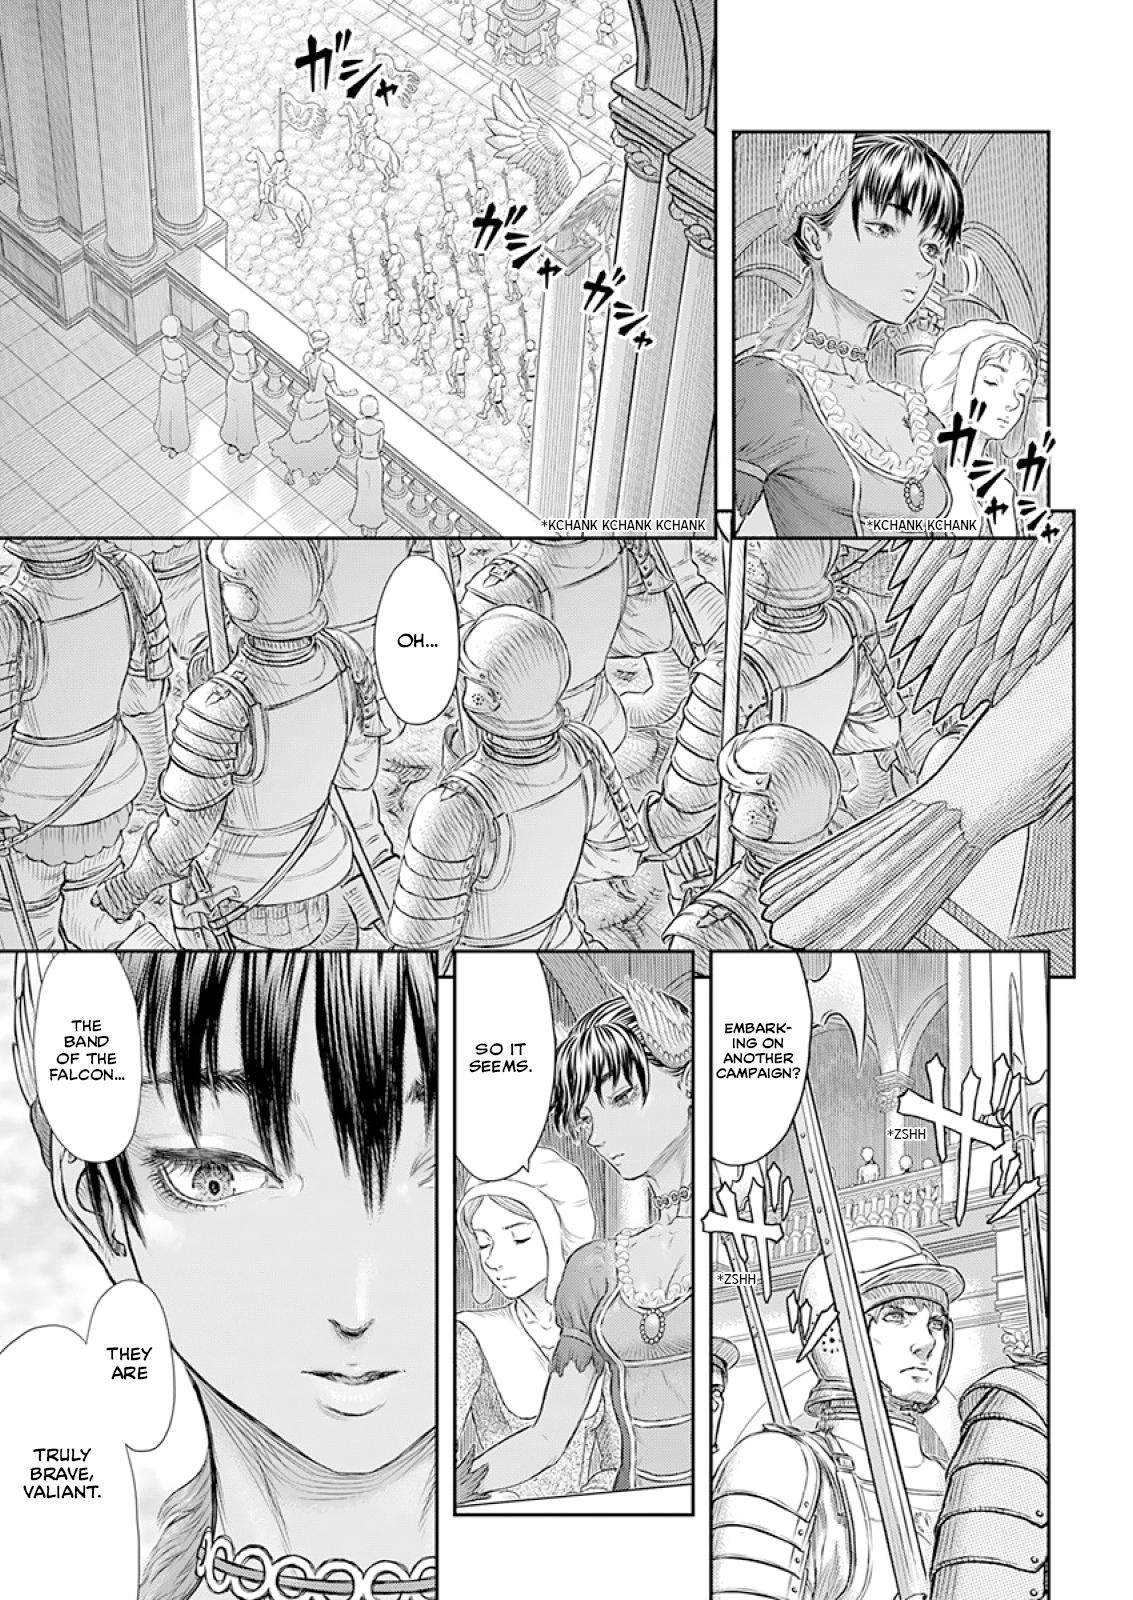 Berserk Manga Chapter 372 image 08